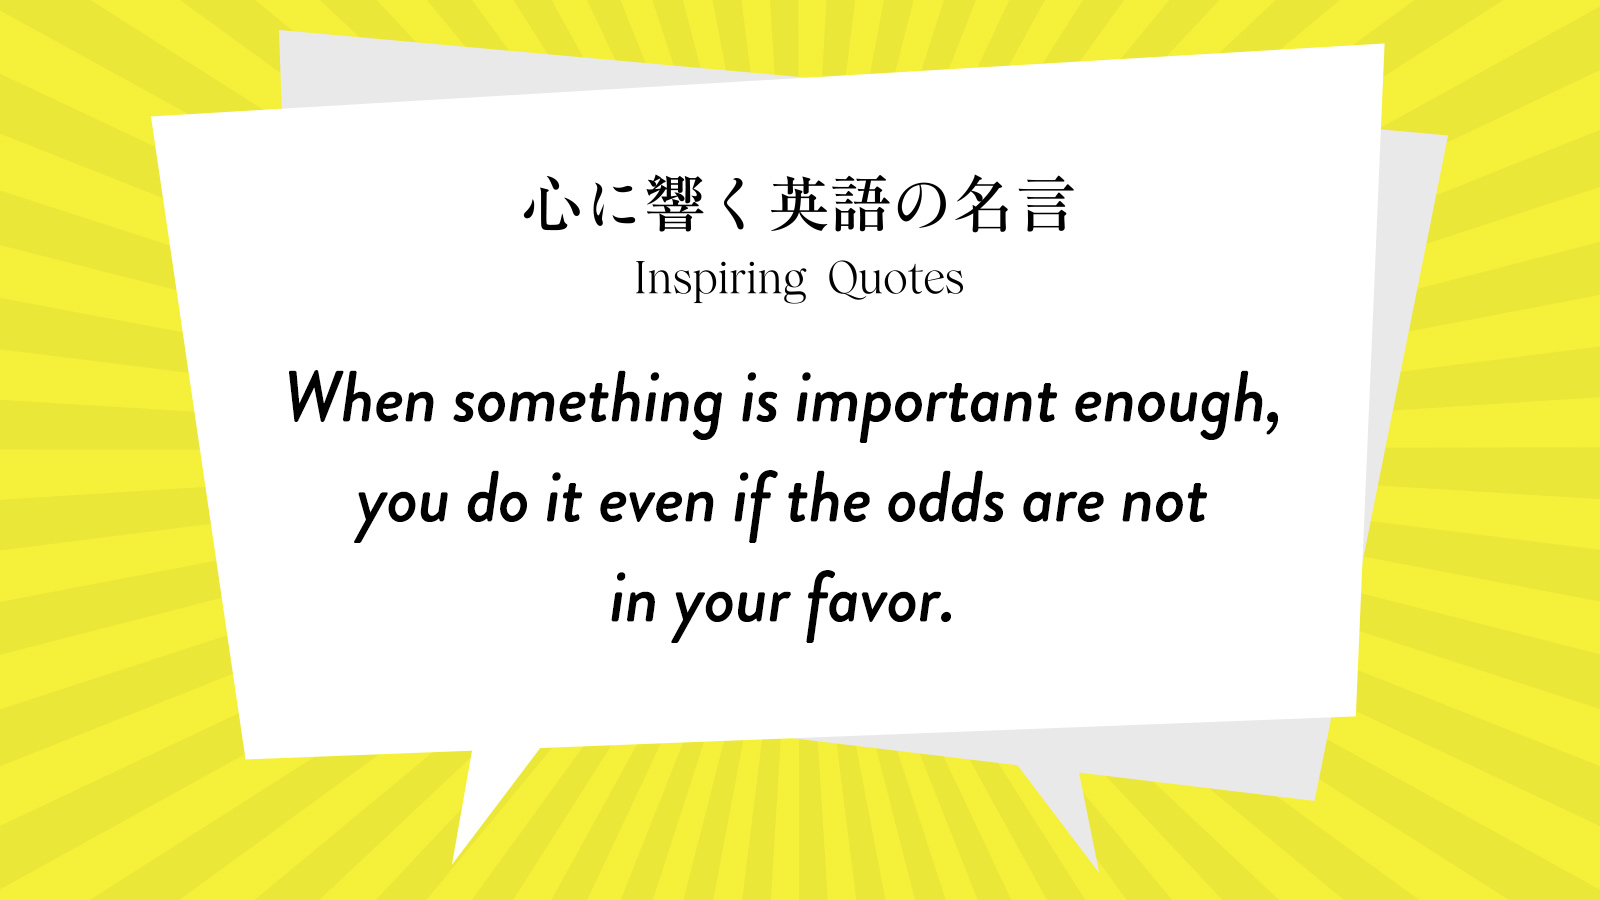 今週の名言 “When something is important enough, you do it even if the odds are not in your favor.” | Inspiring Quotes: 心に響く英語の名言